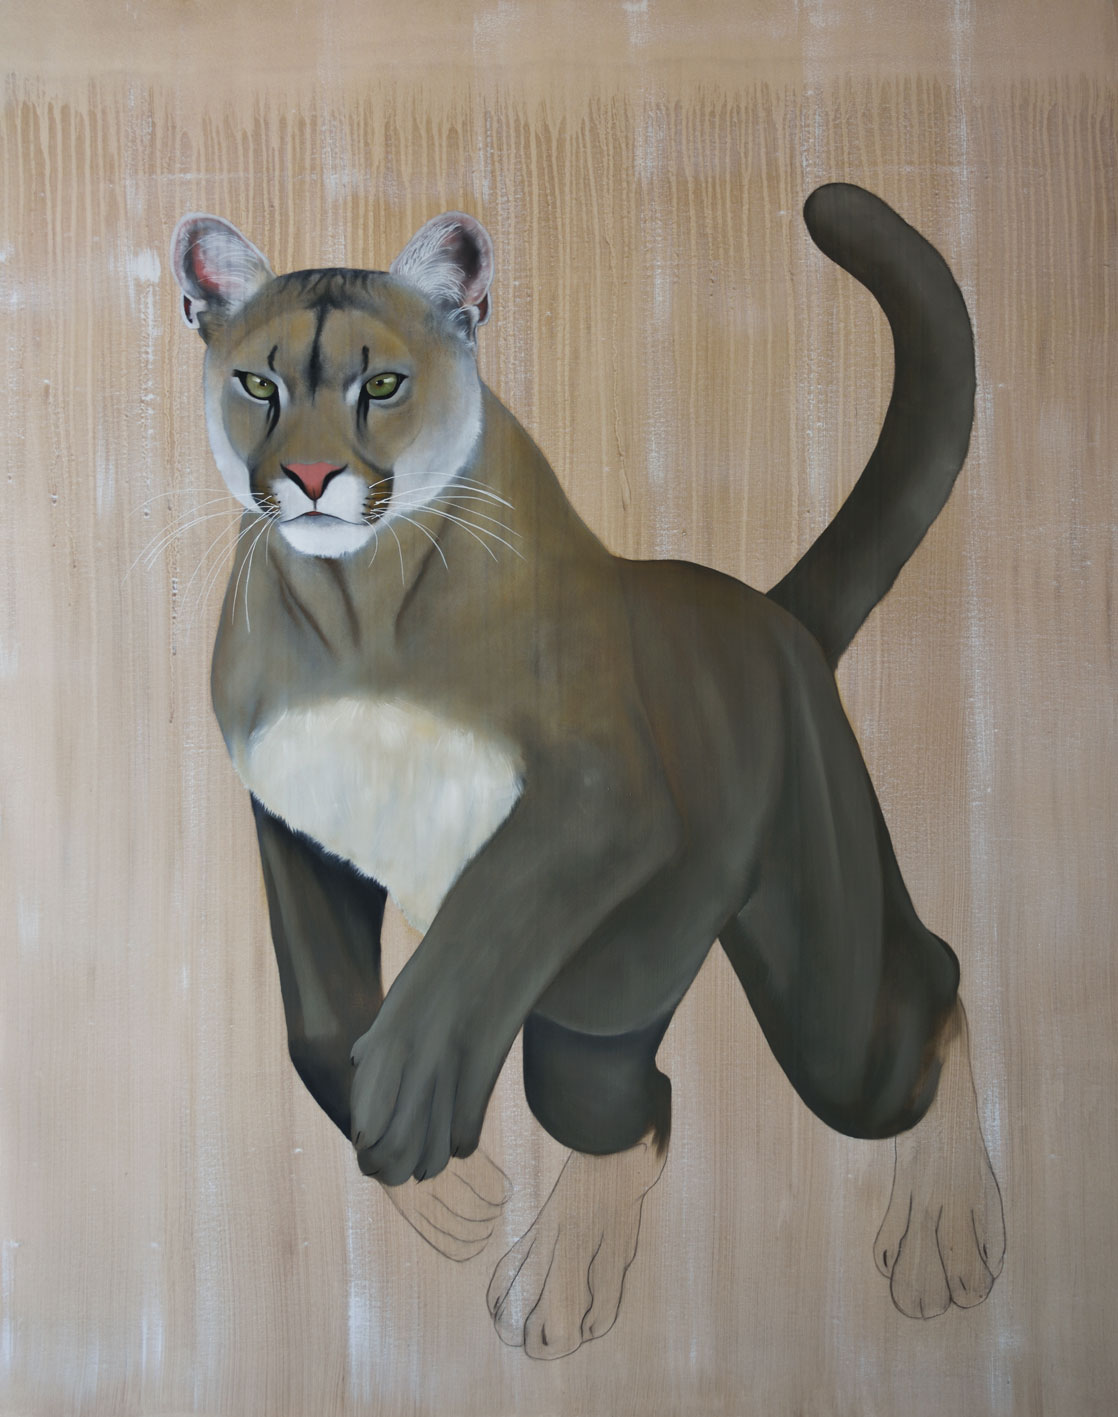 PUMA CONCOLOR CORYI panthÈre-de-floride-puma-cougar Thierry Bisch artiste peintre animaux tableau art  nature biodiversité conservation  